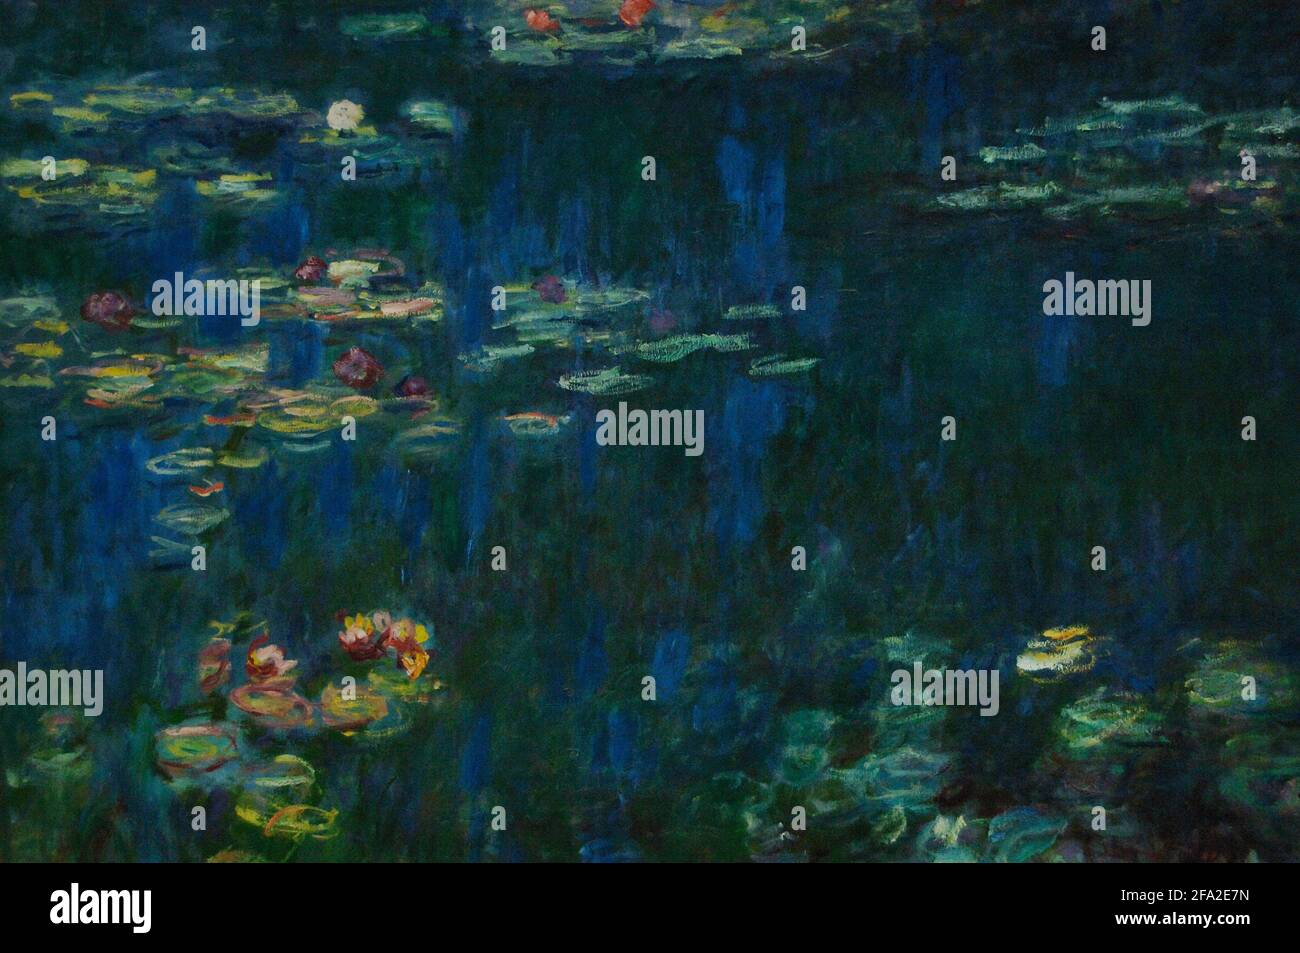 Claude Monet (1840-1926). Peintre impressionniste français. Les lilas d'eau: Réflexions vertes, ca. 1915-1926. Huile sur toile (200 x 850 cm). Détails. Musée de l'Orangerie. Paris. France. Banque D'Images